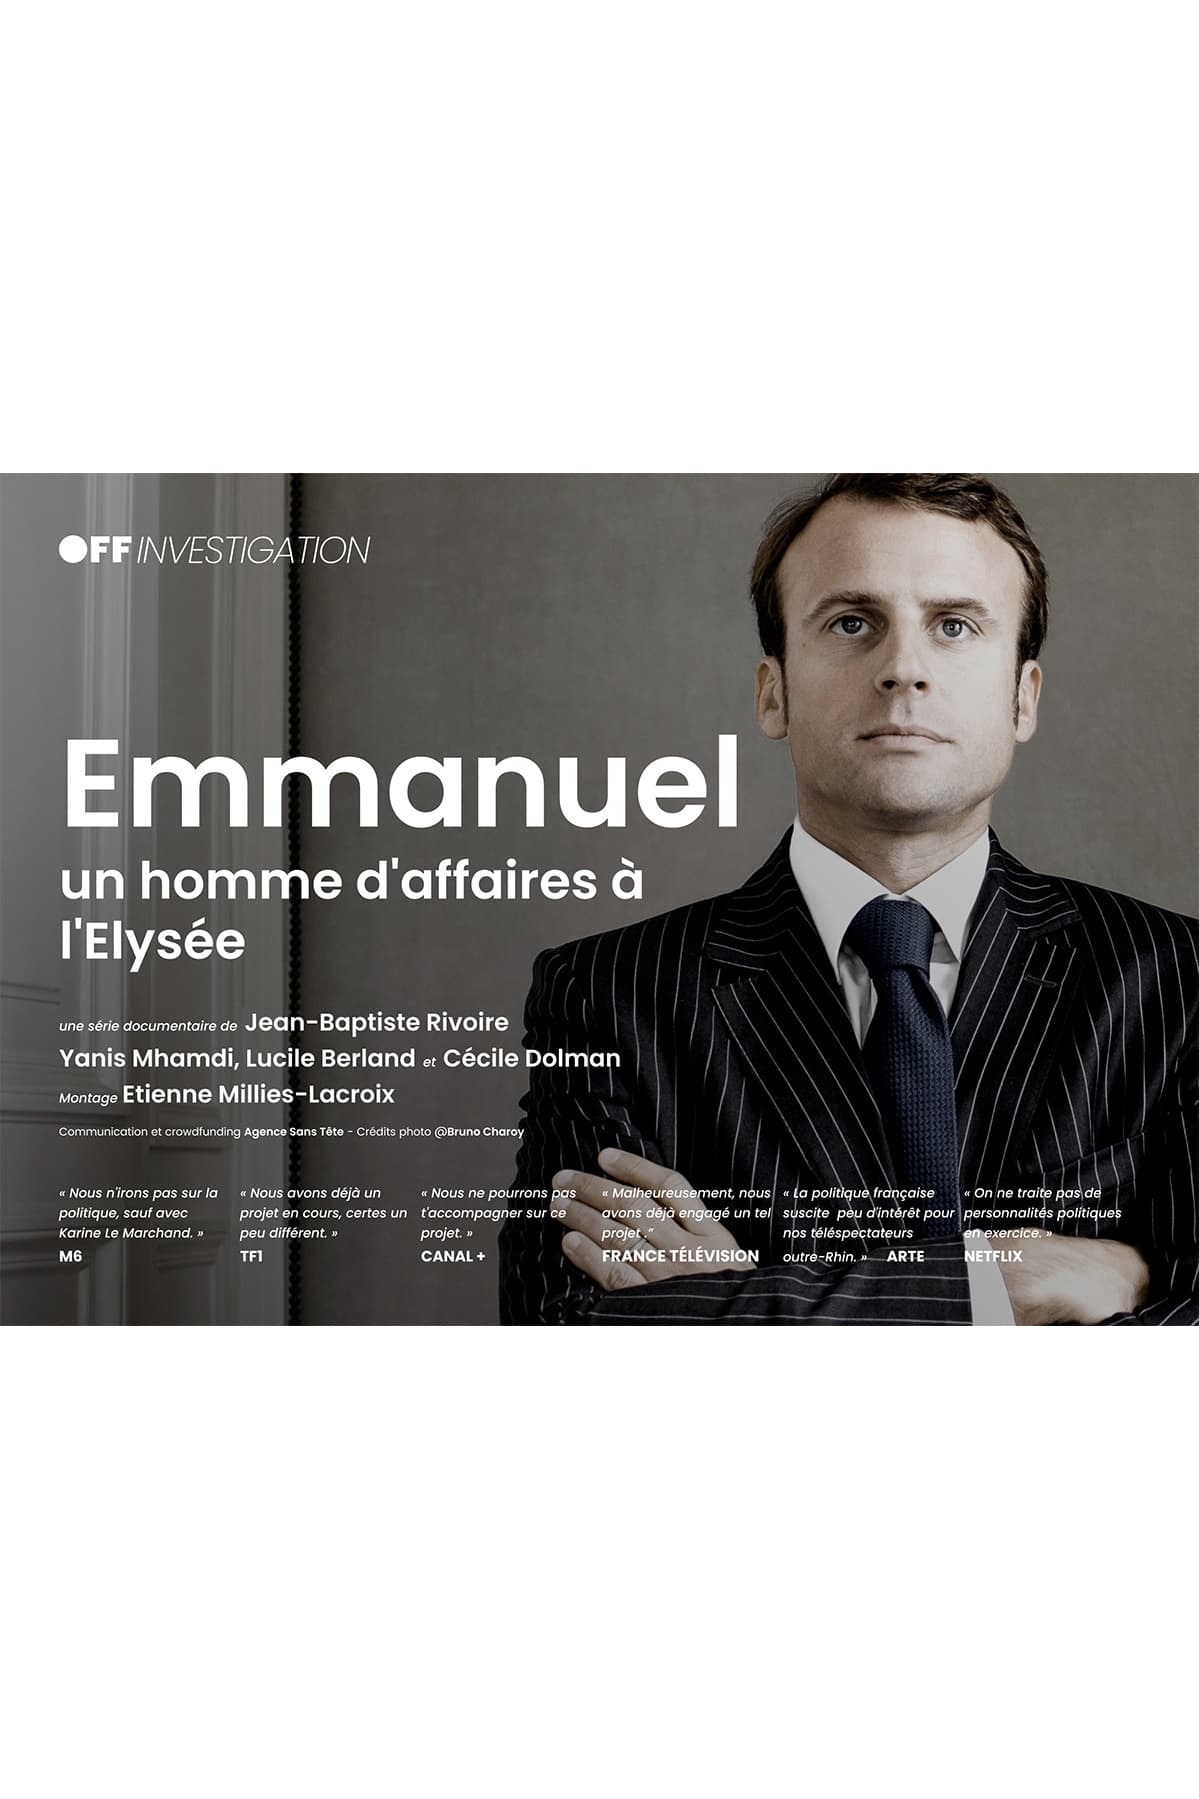 Emmanuel, un homme d'affaire à l'Élysée TV Shows About Social Documentary